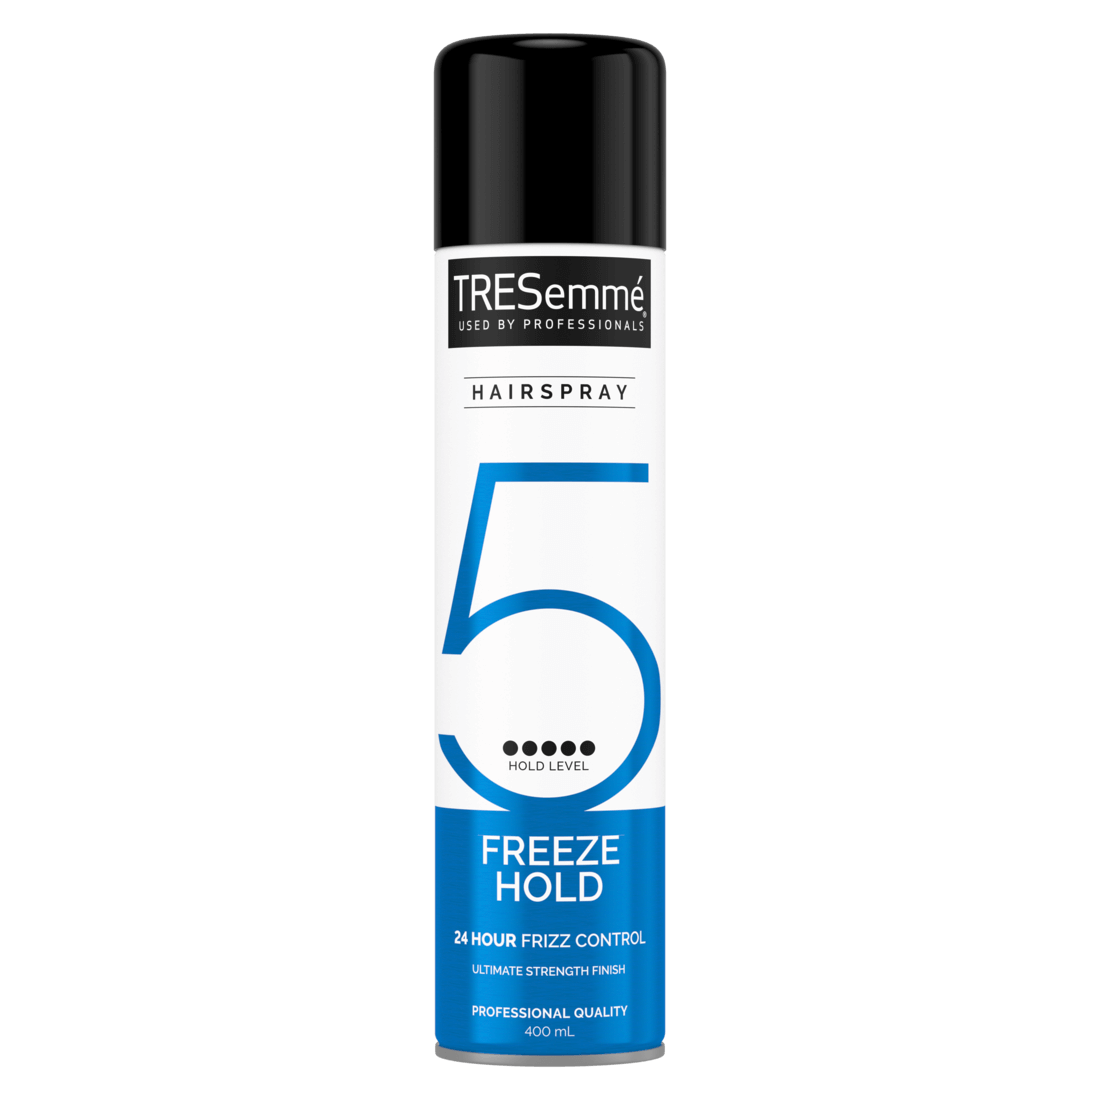 Billede på forsiden af pakken af en spraydåse med 400 ml TRESemmé Freeze Hold Hairspray